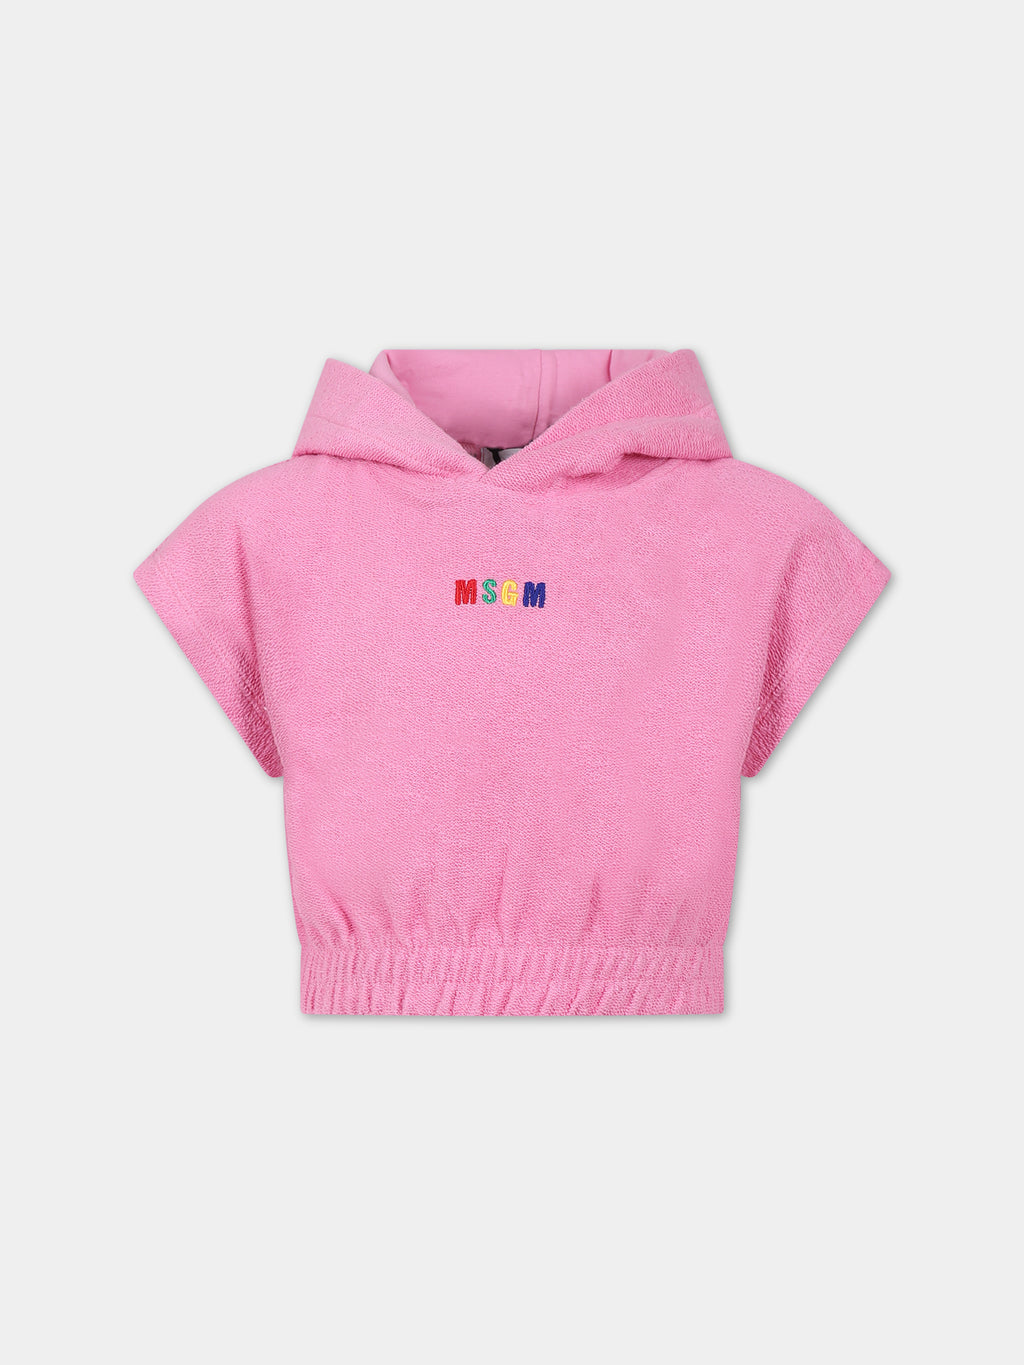 Pink sweatshirt for girl with logo